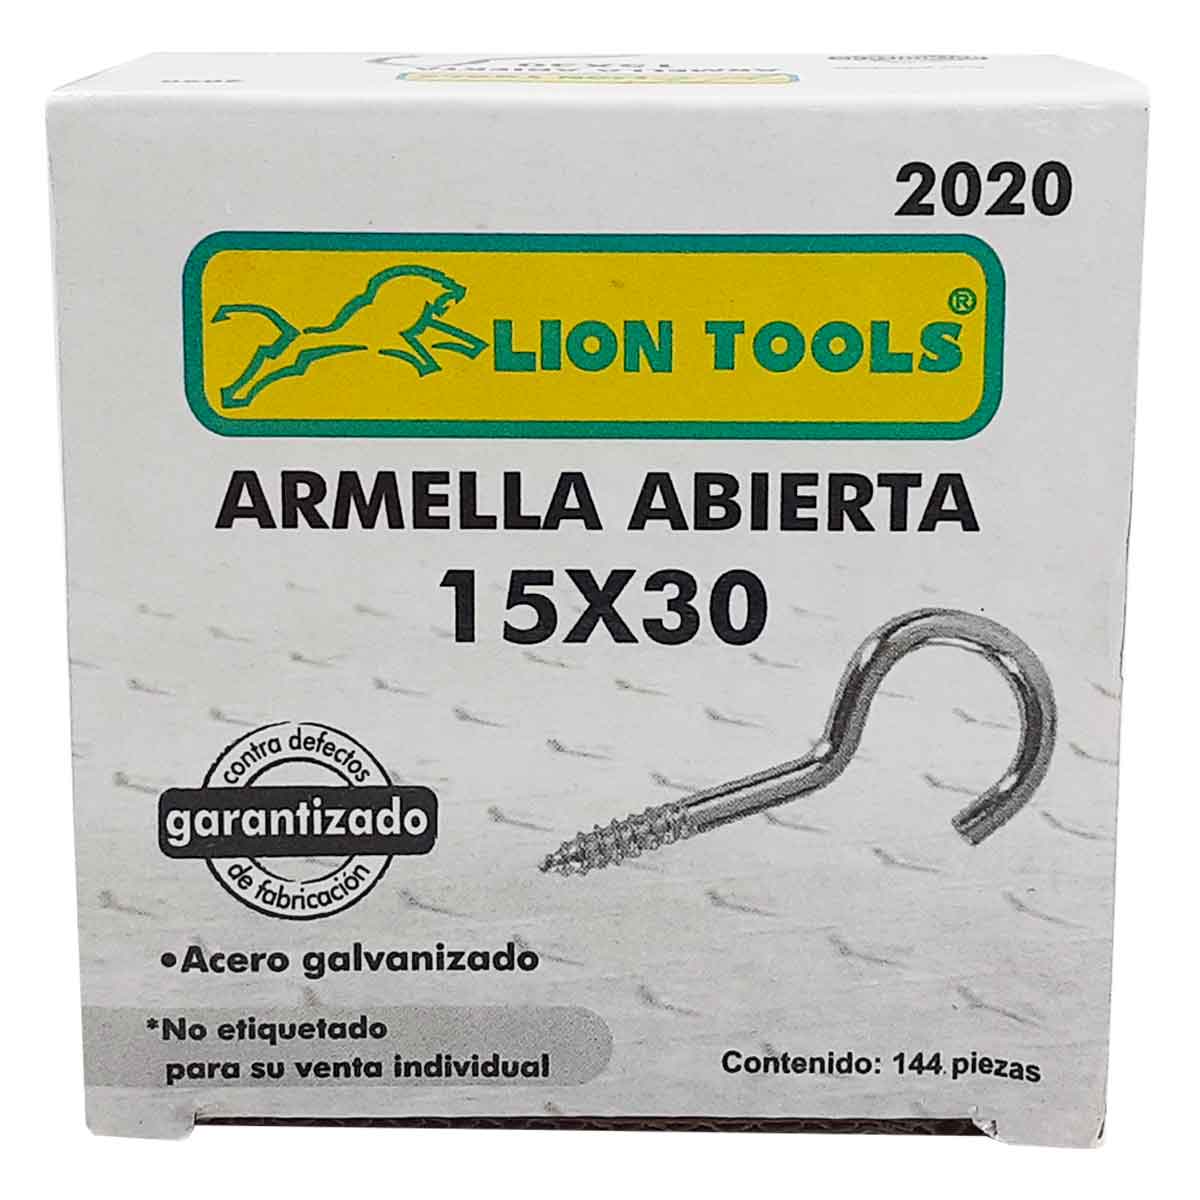 CAJA ARMELLA ABIERTA 15 X 30 144 PZS LION TOOLS